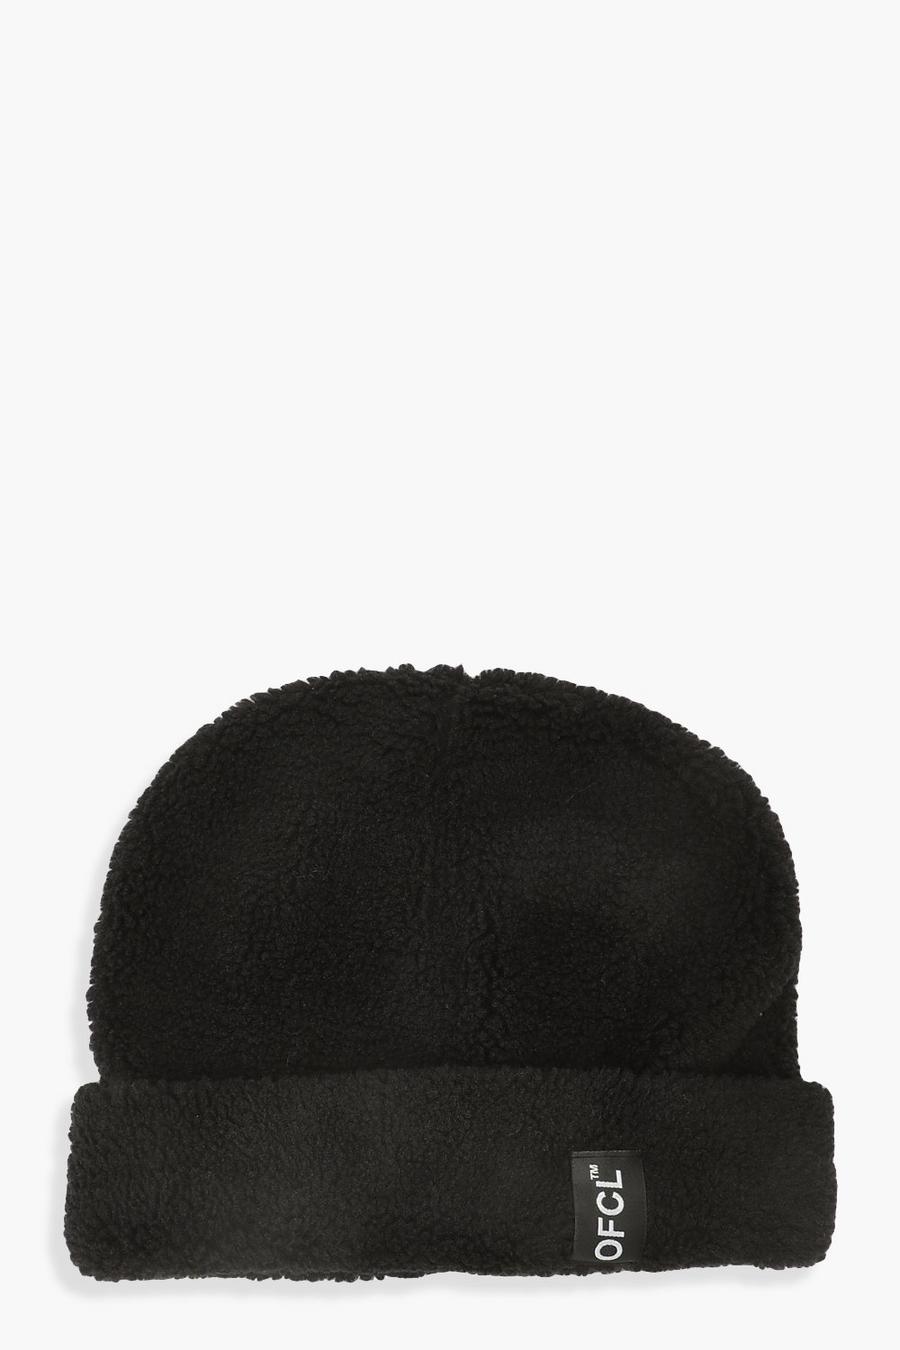 שחור כובע צמר עם לשונית ארוגה עם כיתוב Offcl  image number 1